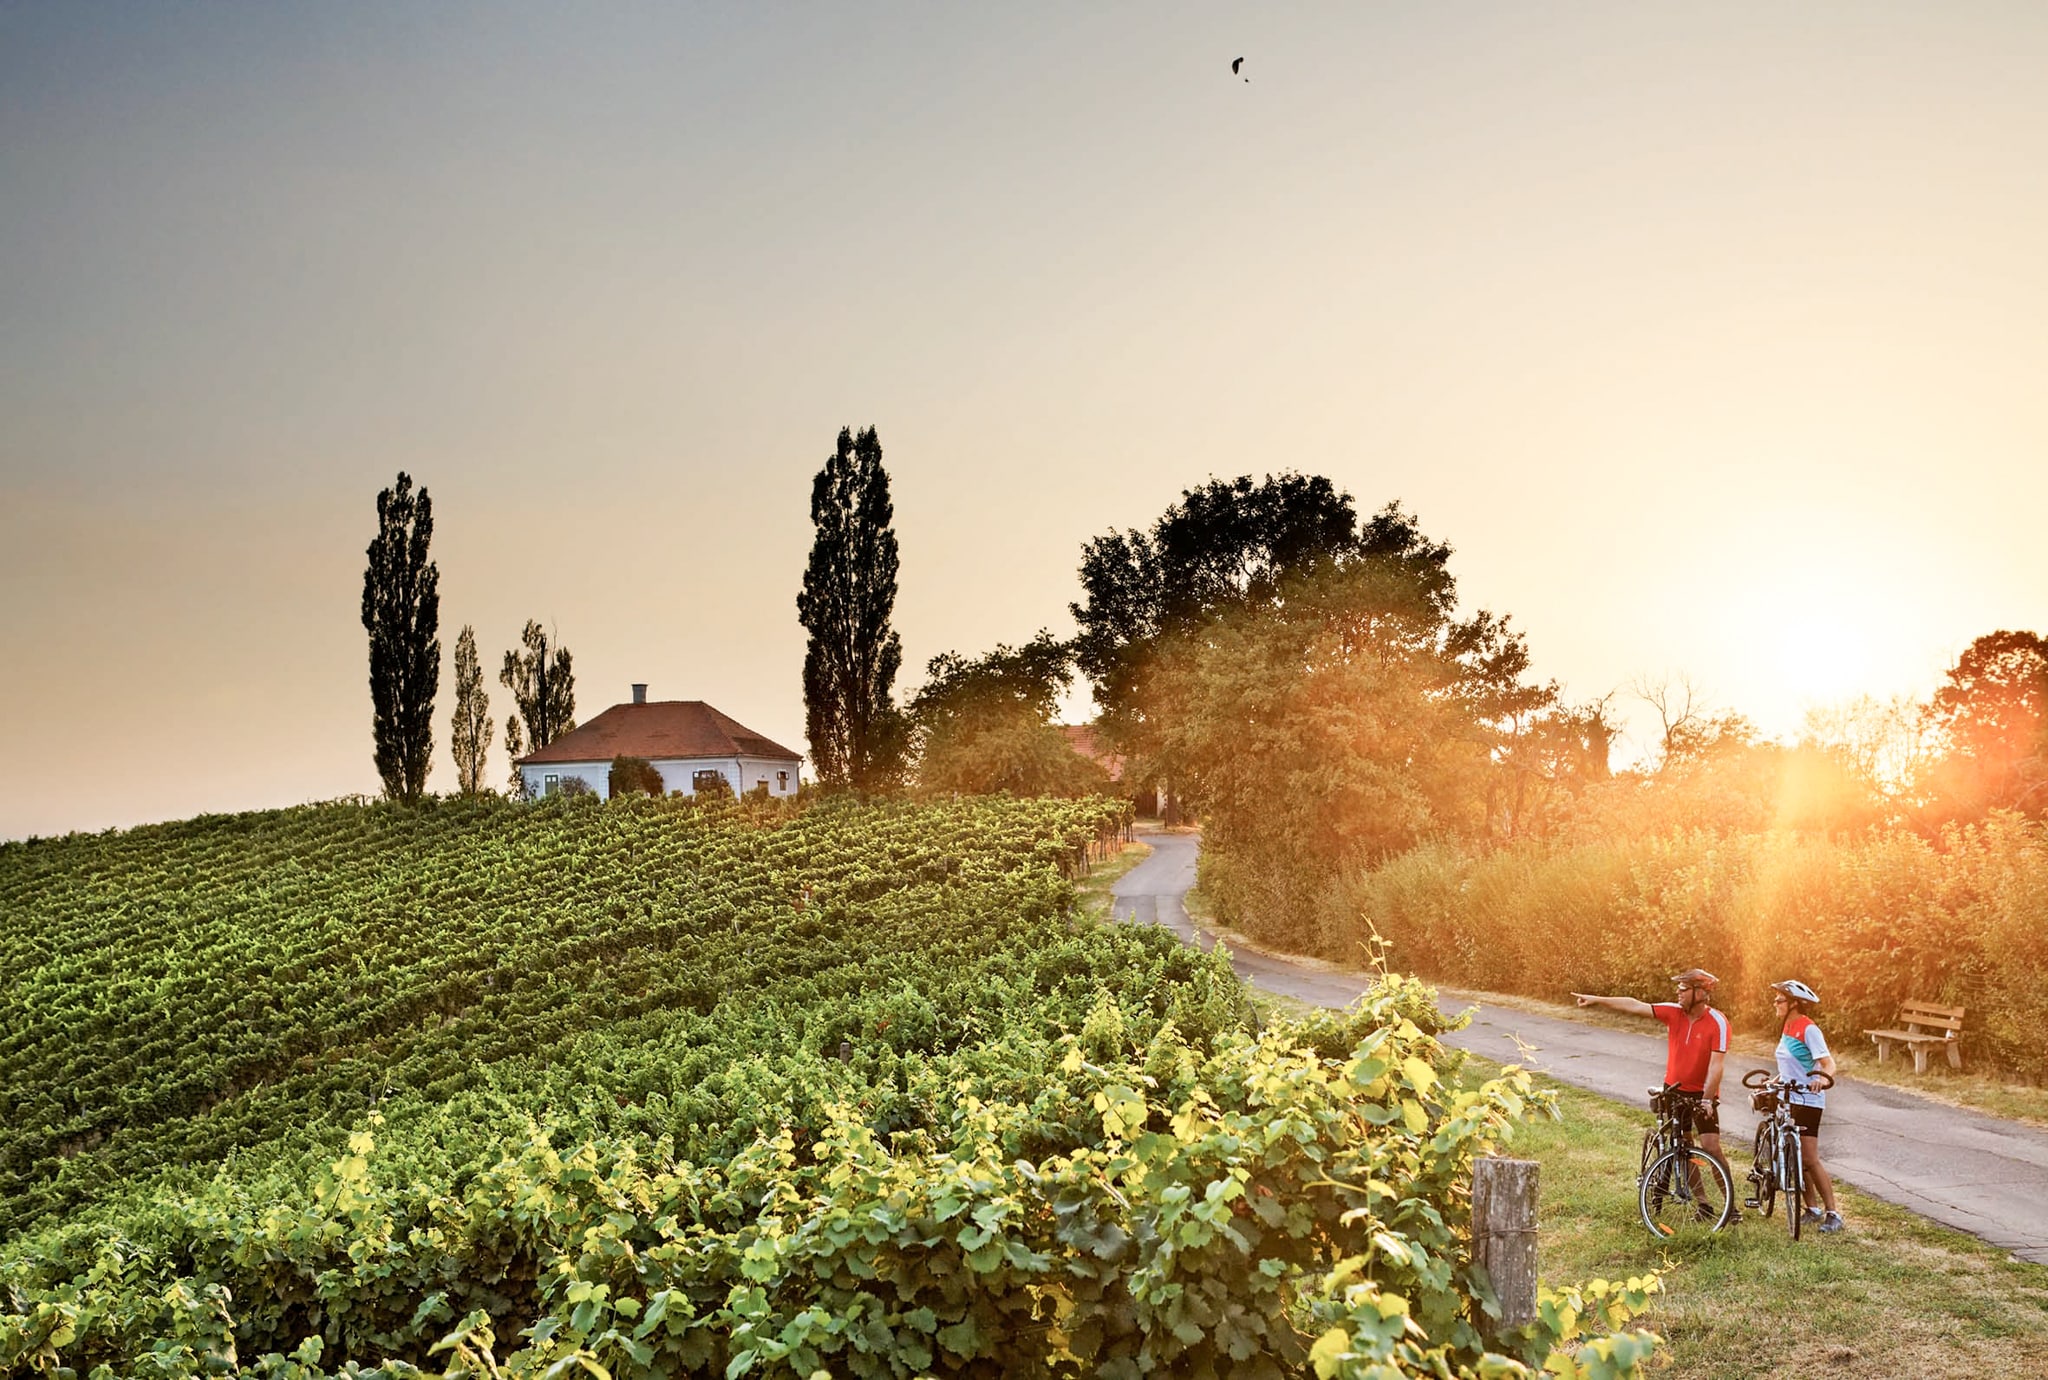 Blick auf die Weinreben in der malerischen Landschaft der Südoststeiermark, im rechten unteren Bildrand sind zwei Radfahrer zu sehen. Der Mann deutet auf die Weinreben und erklärt der Frau etwas dazu.